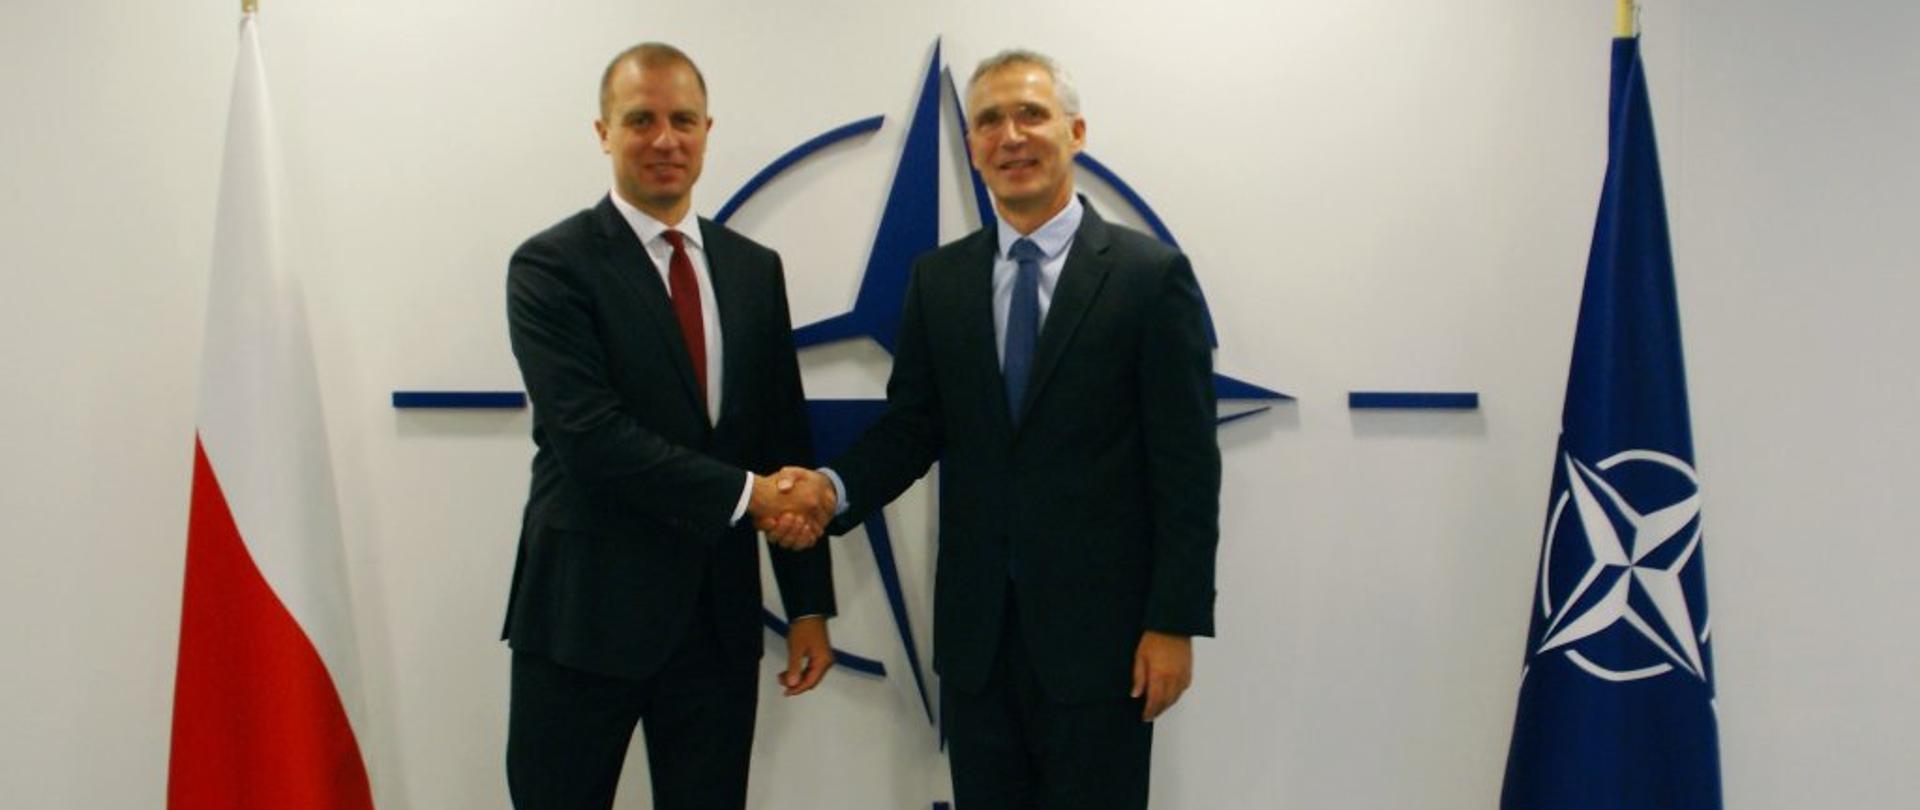 Spotkanie Amb. Tomasza Szatkowskiego z Sekretarzem Generalnym NATO Jensem Stoltenbergiem